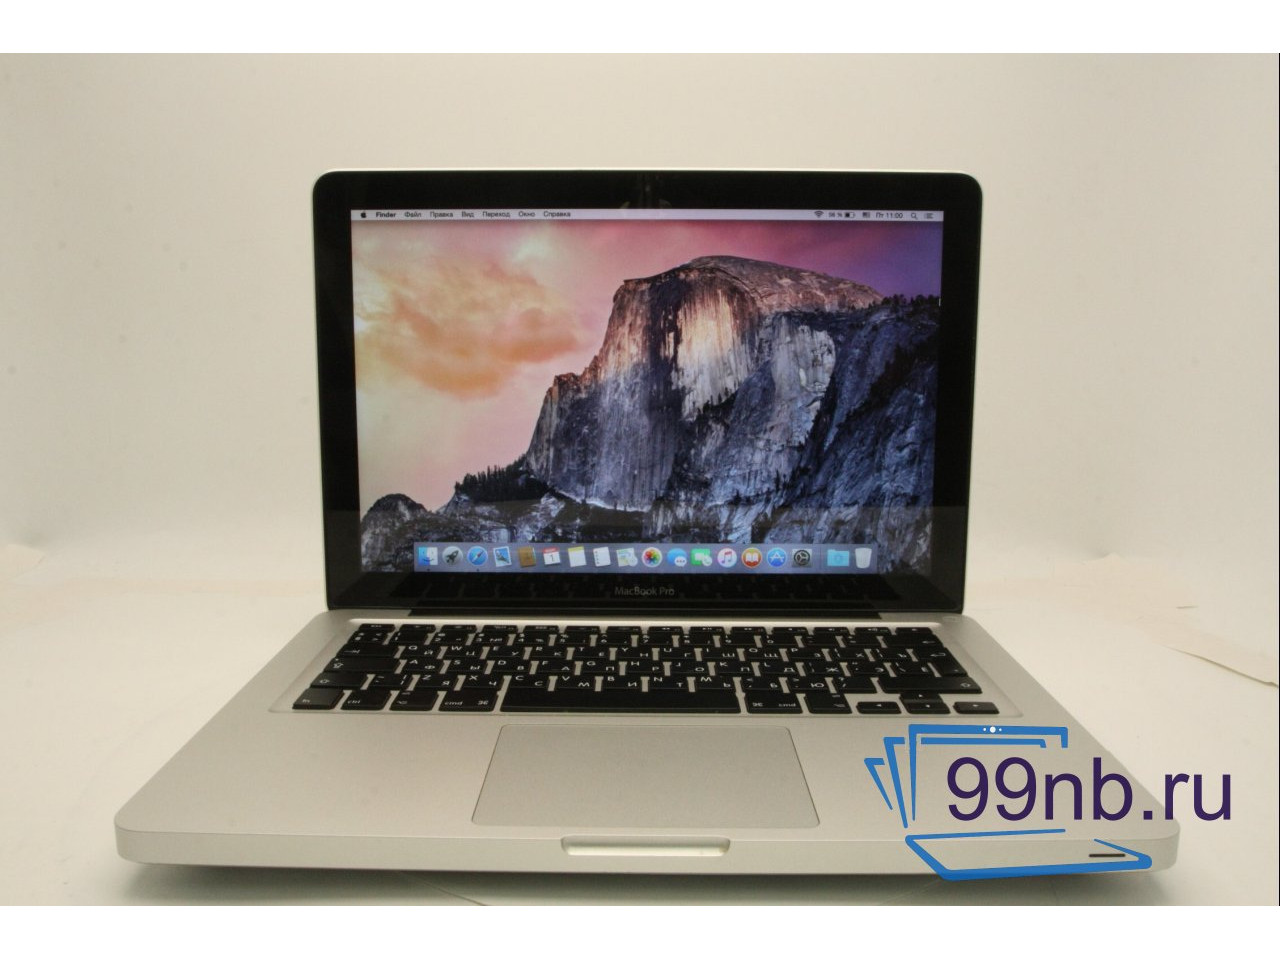 Macbook MacBook Pro (13-inch, Mid 2012